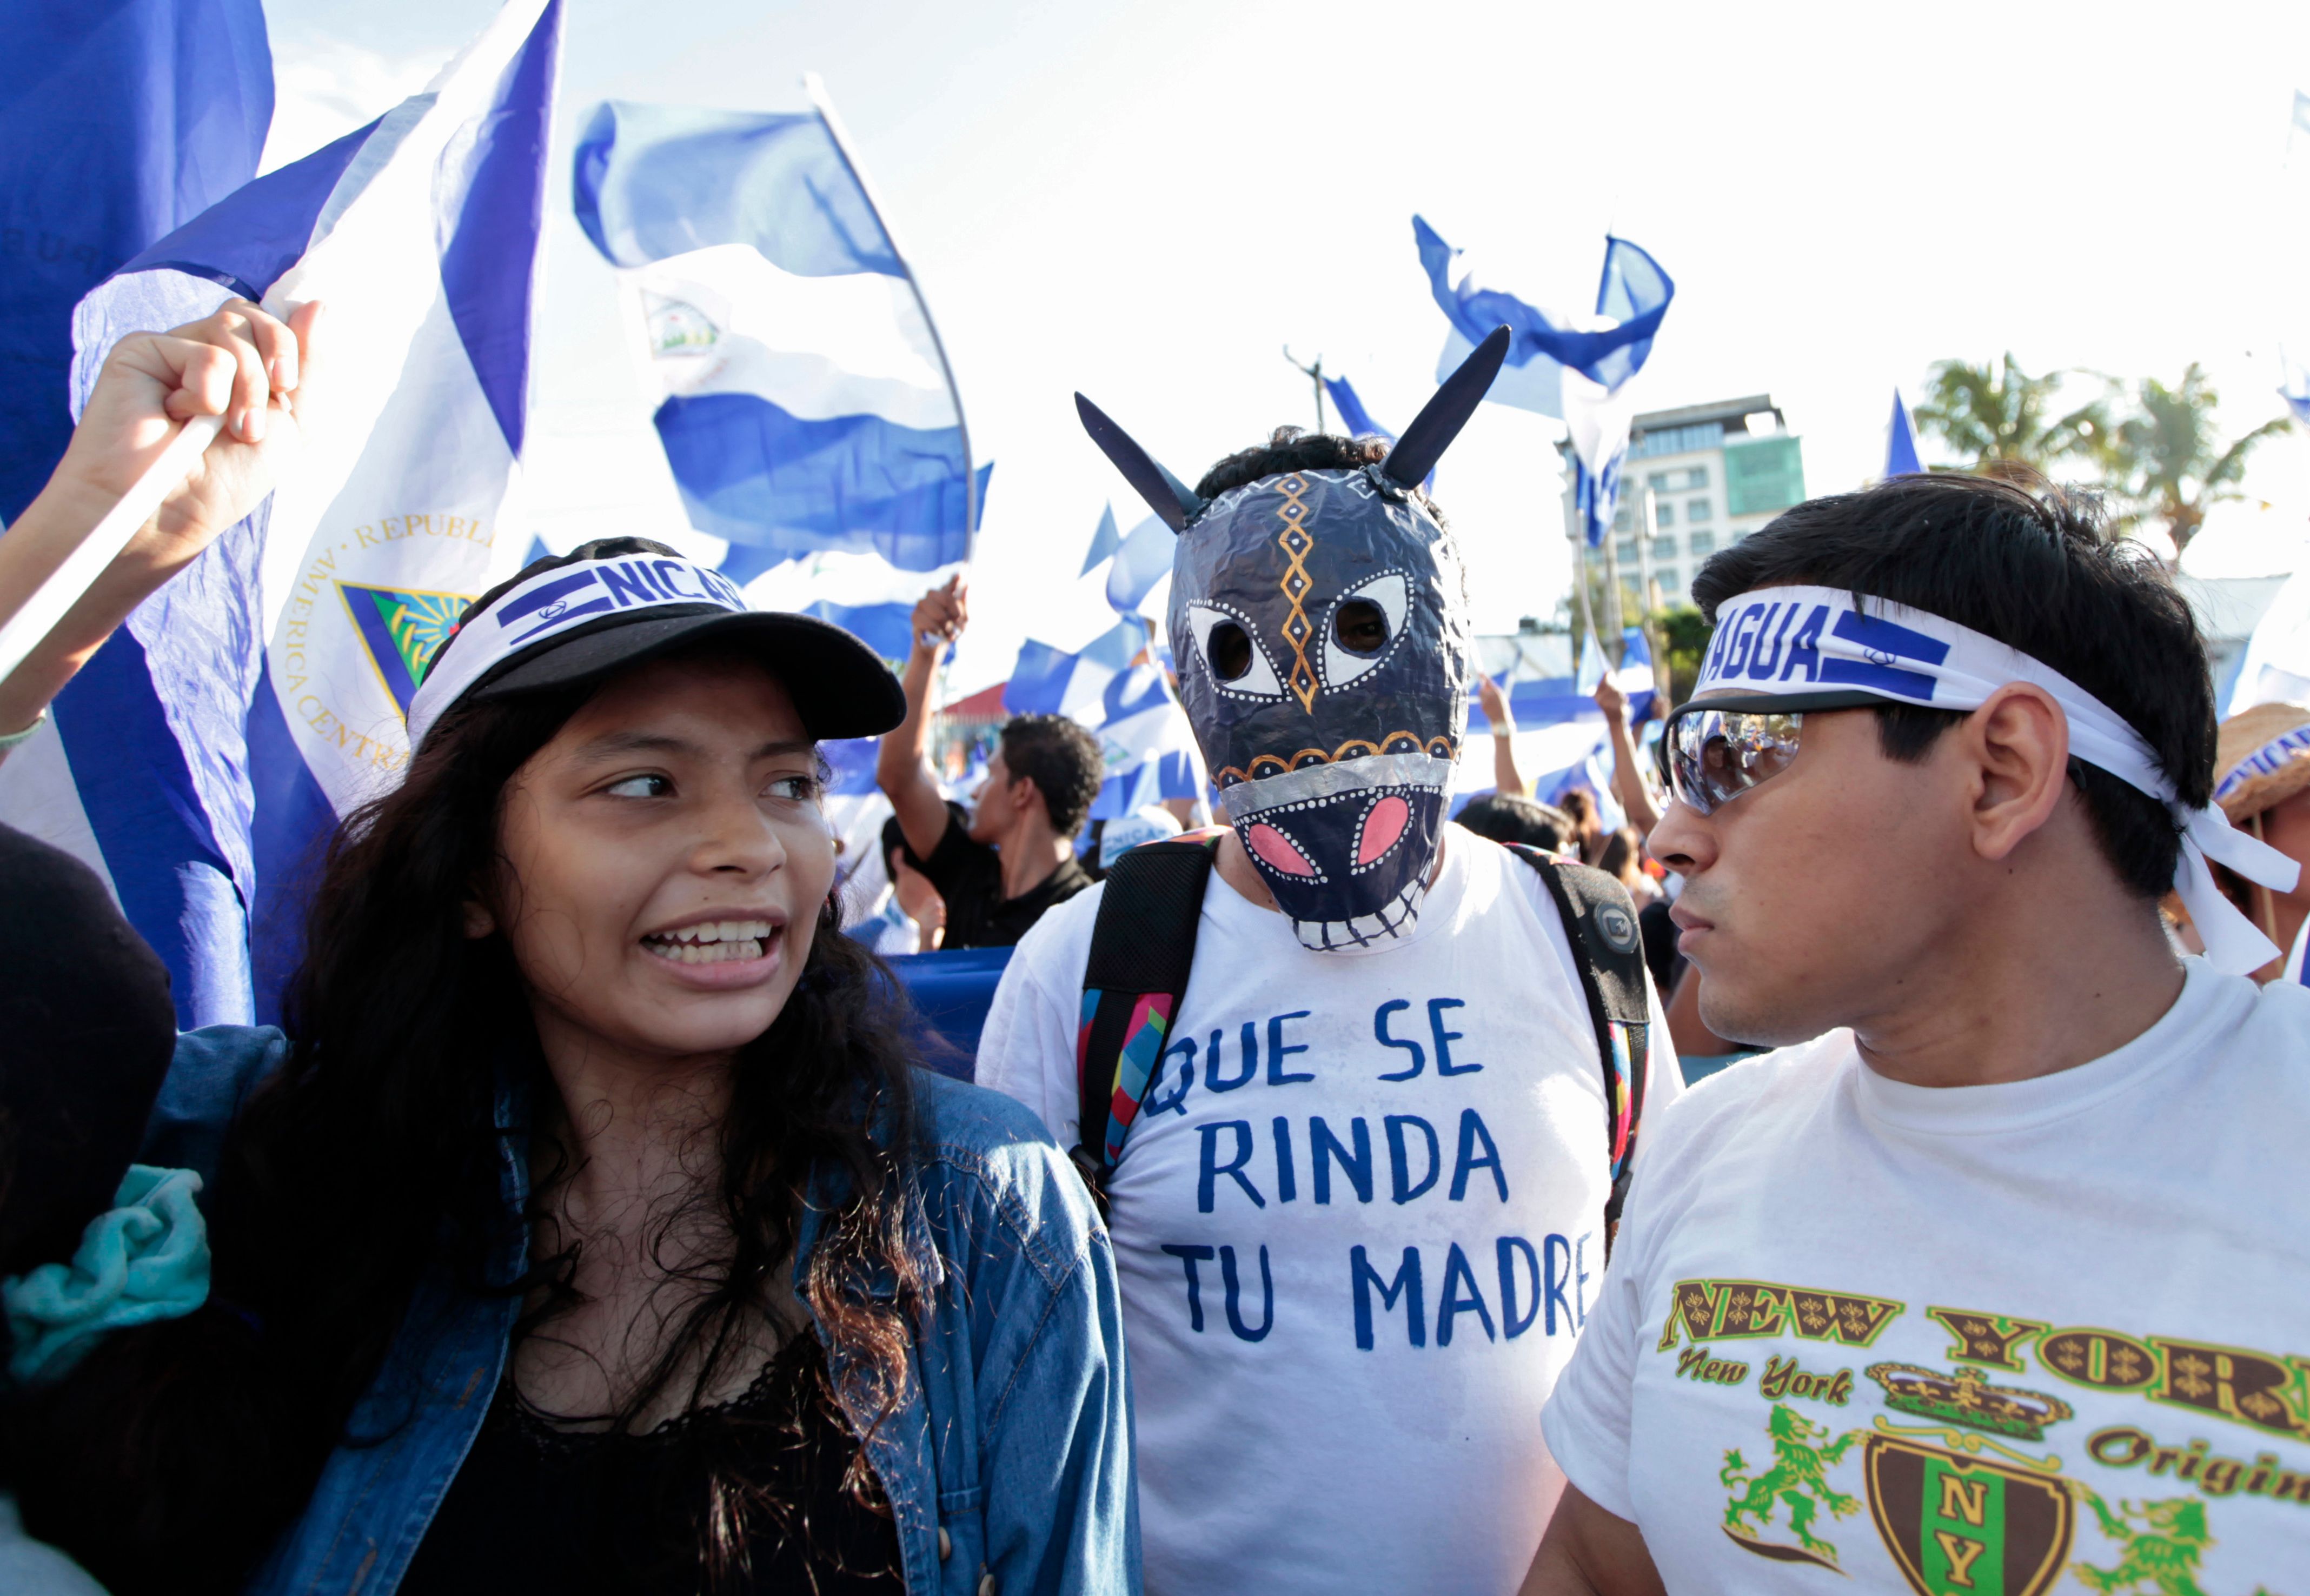 المتظاهرون فى نيكاراجوا